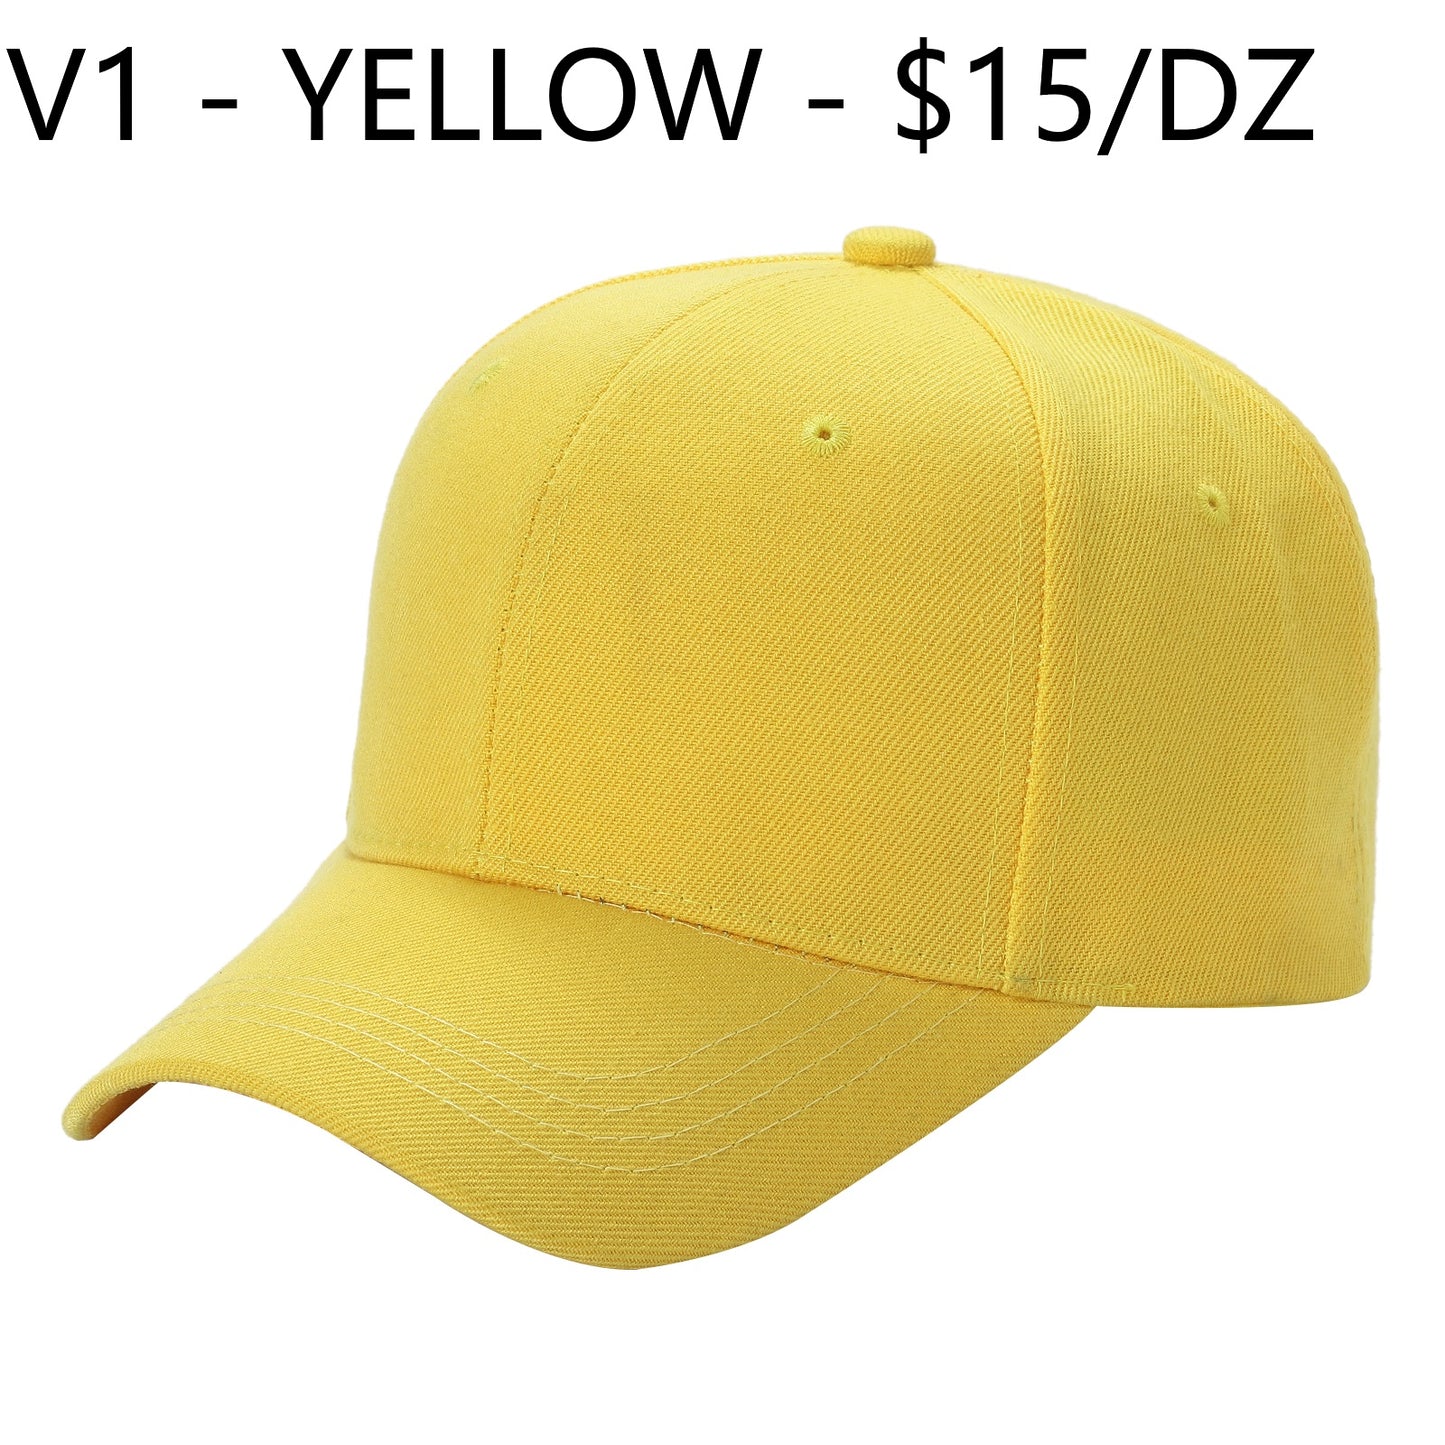 V1 - Solid Velcro Baseball Cap